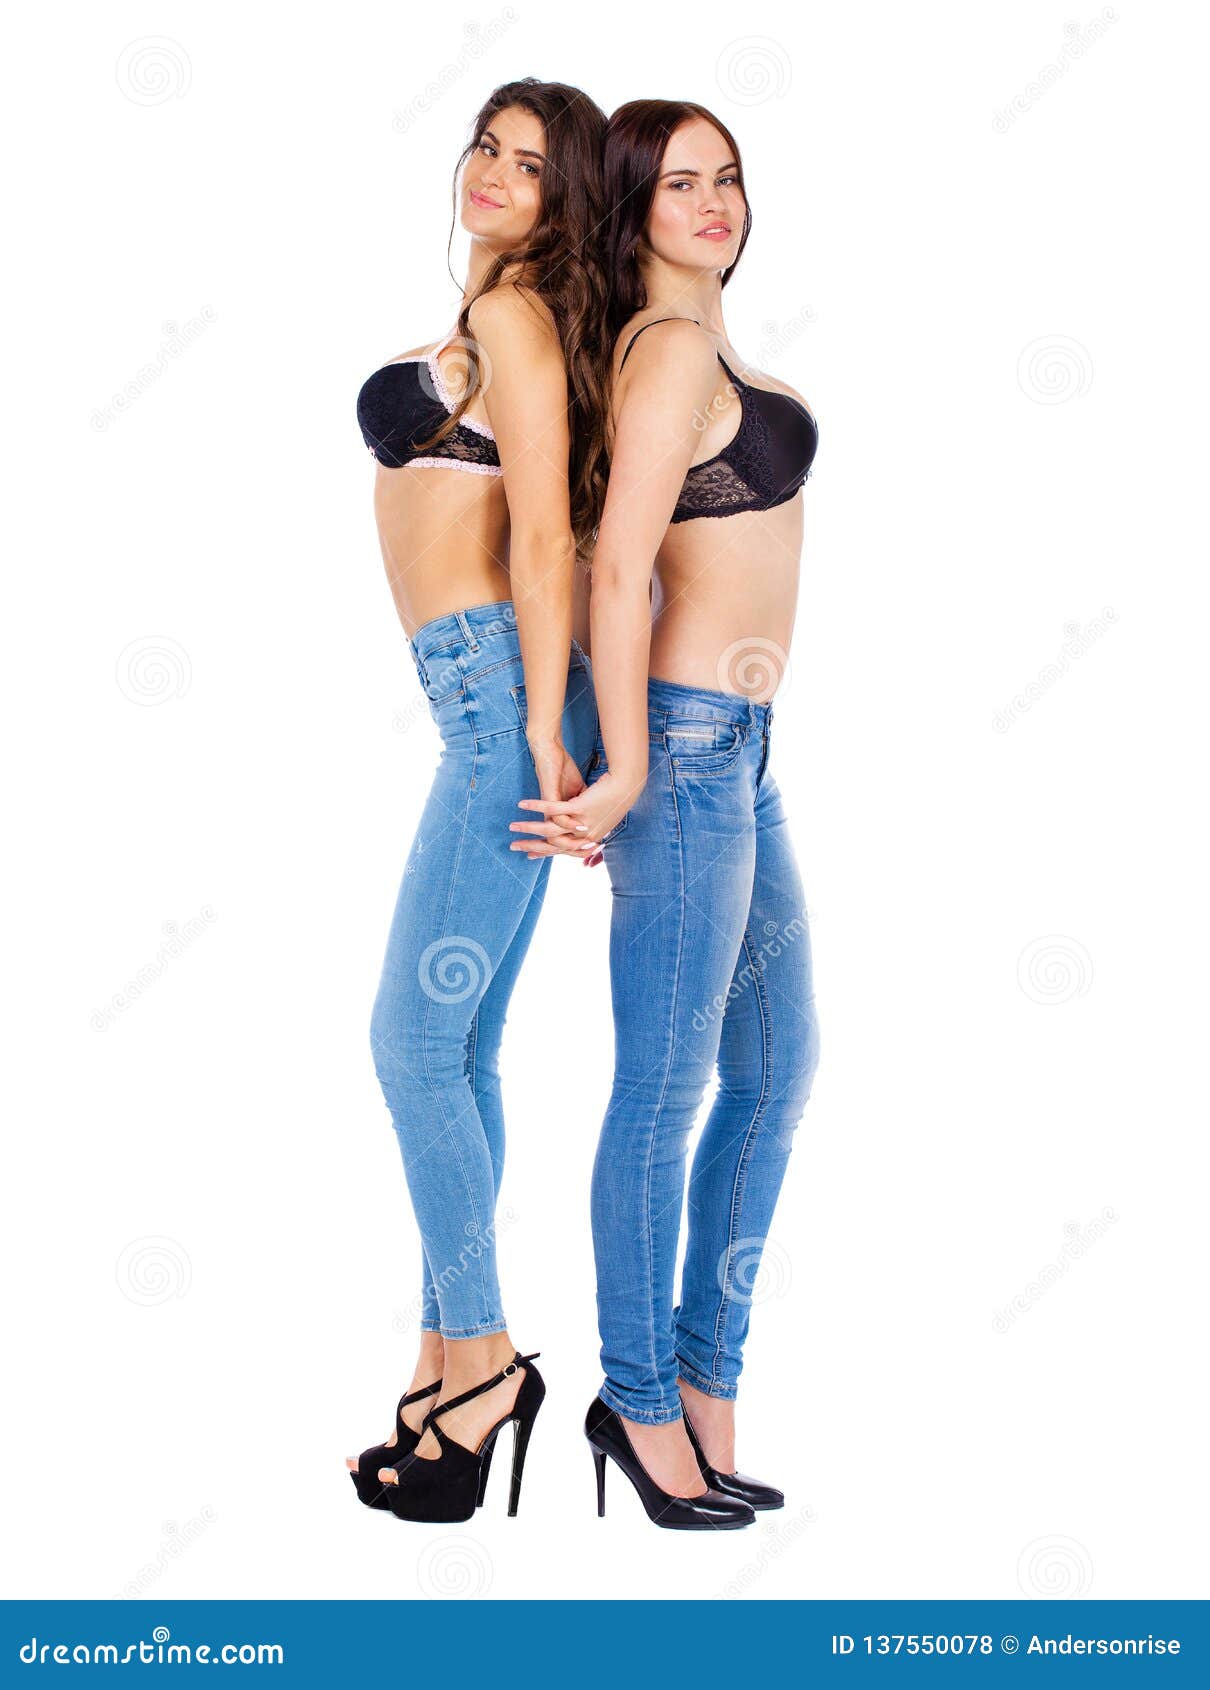 лесби целуются в джинсах фото 33